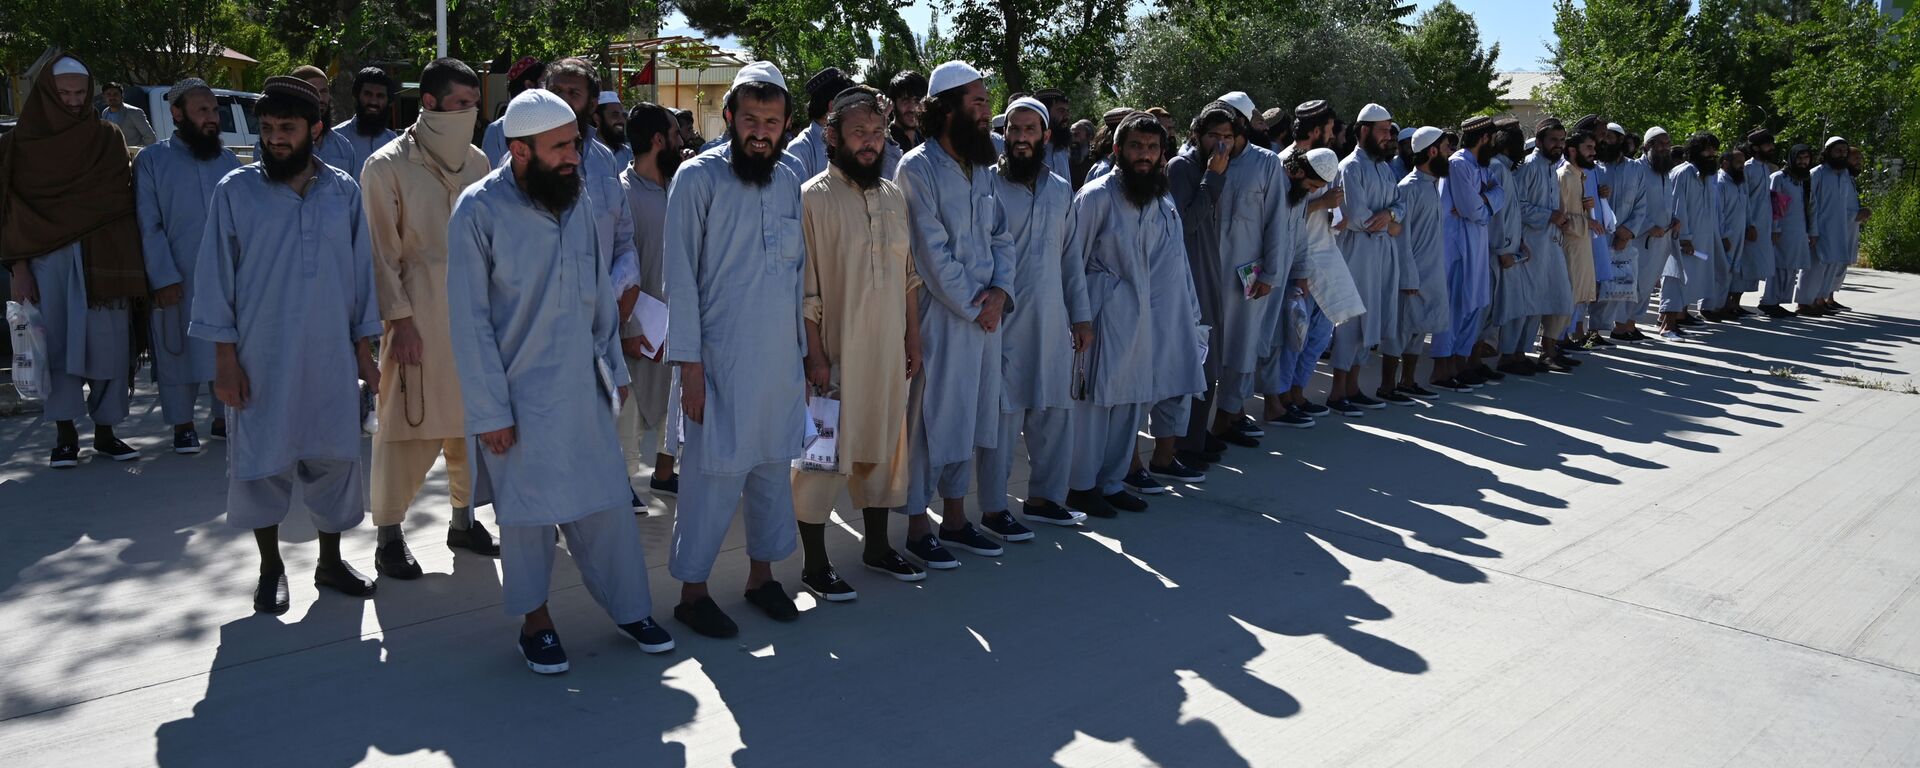 Заключенные талибы во время их освобождения из тюрьмы Баграм, Афганистан - Sputnik Таджикистан, 1920, 12.08.2021